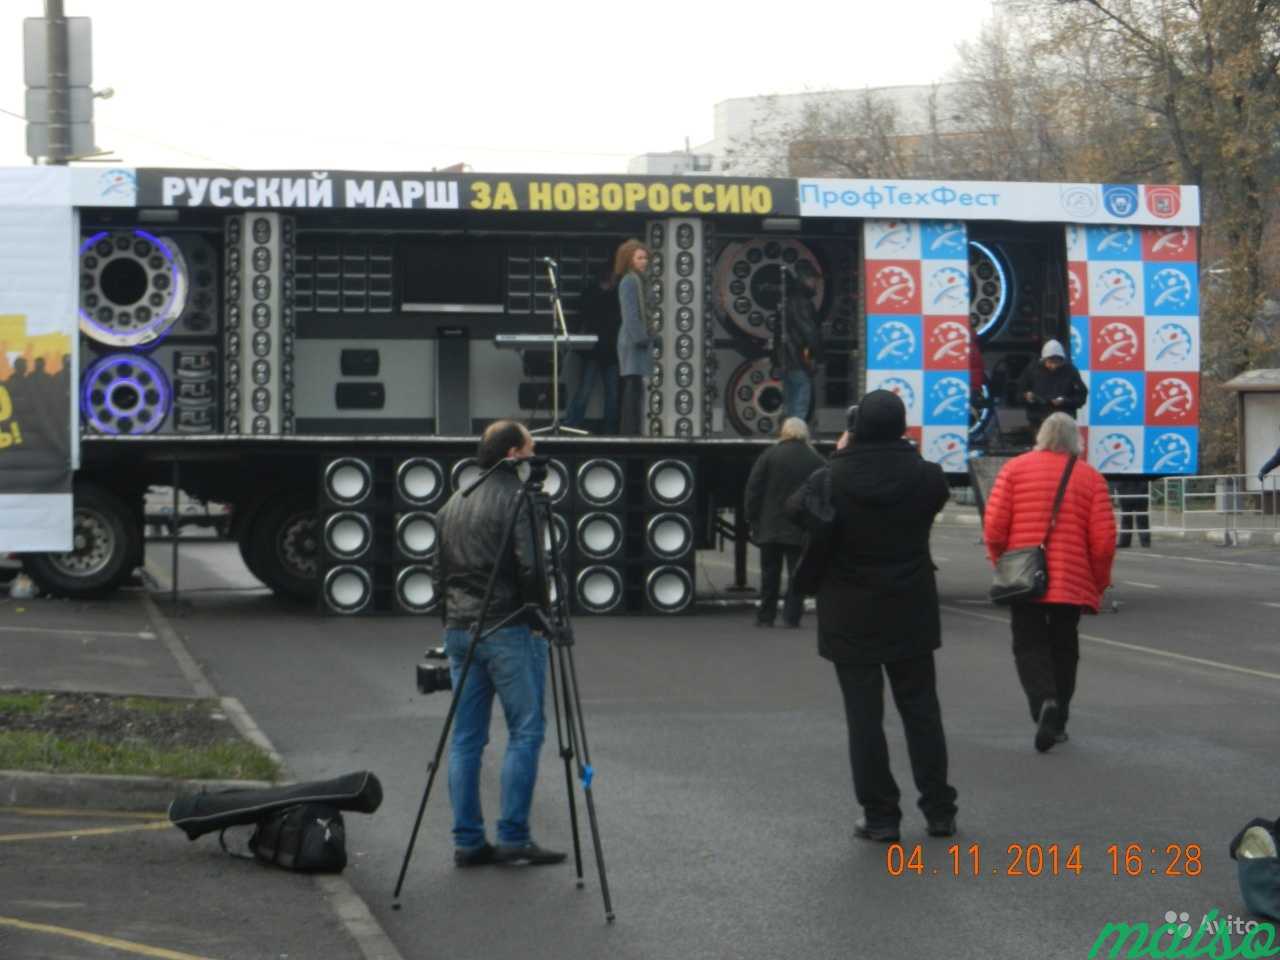 Помощь в проведение праздника в Москве. Фото 2